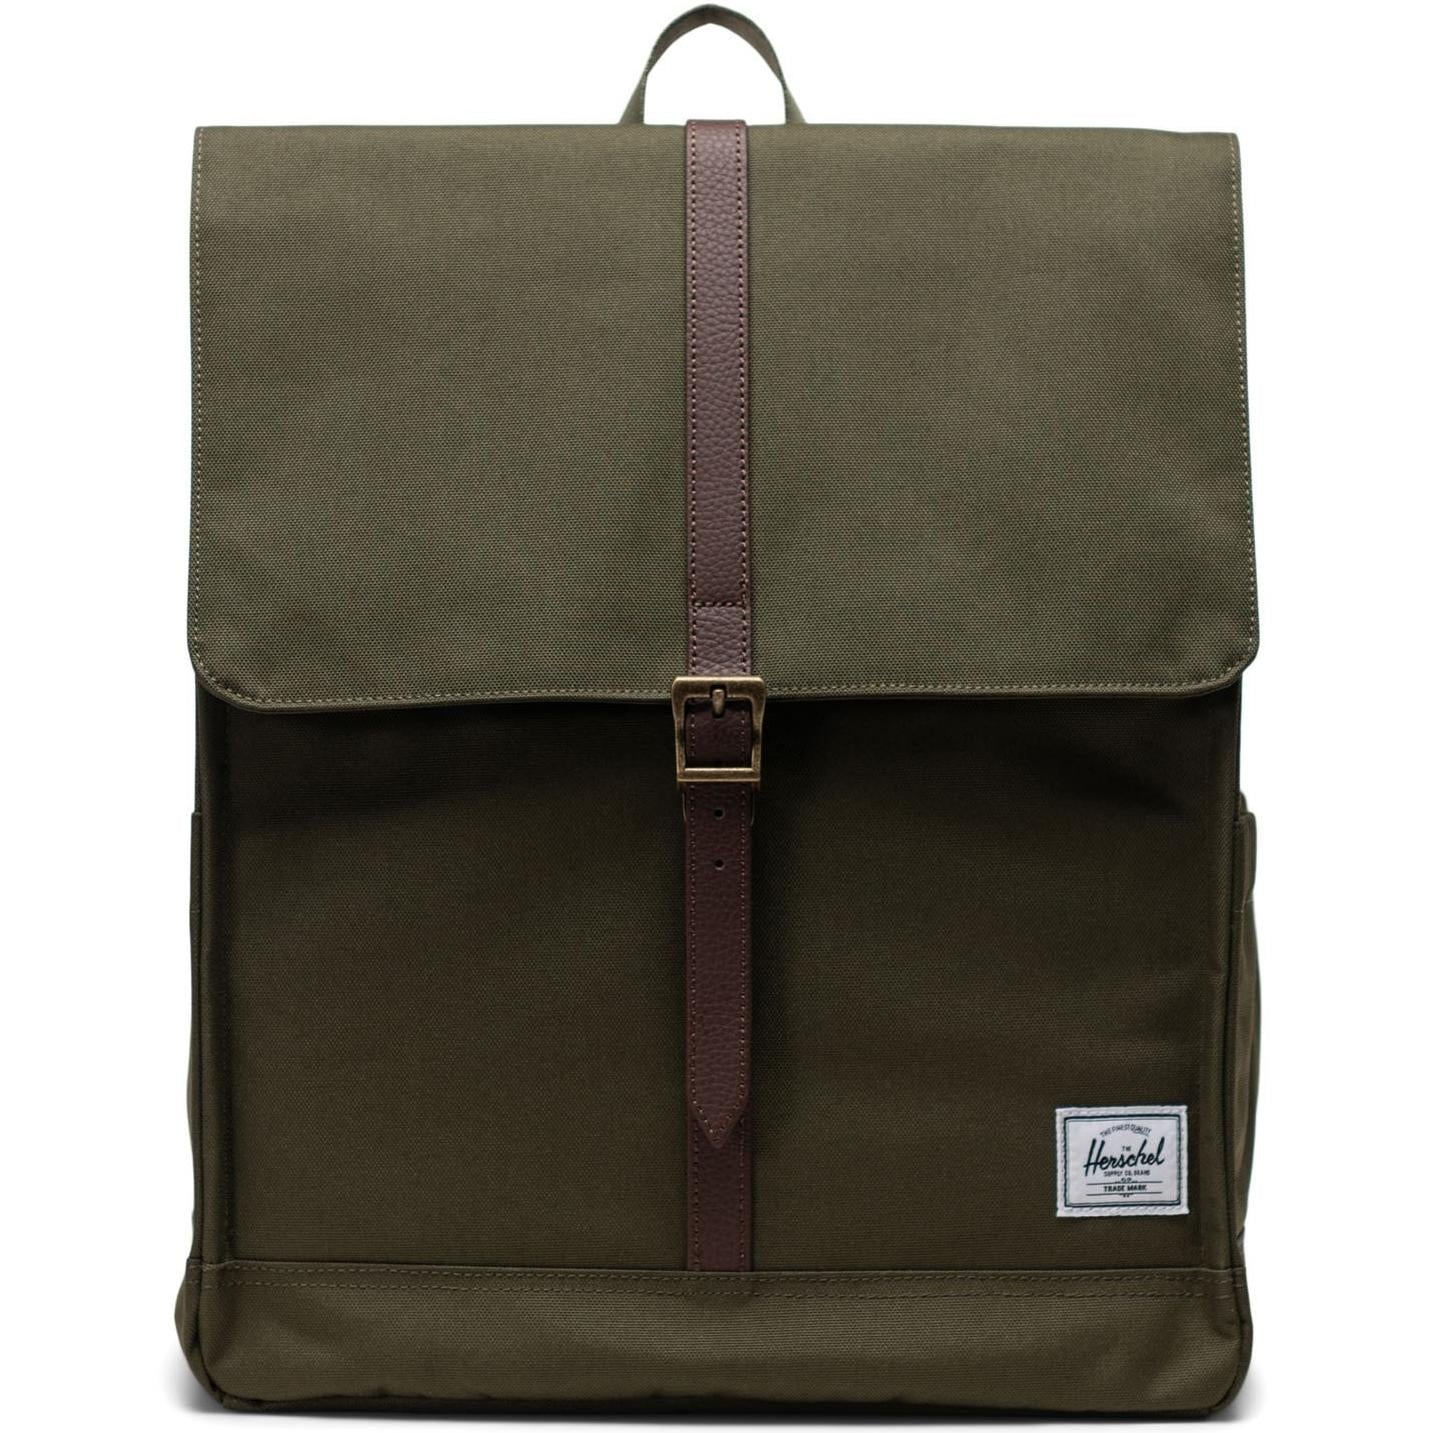 Herschel City Backpack Bag